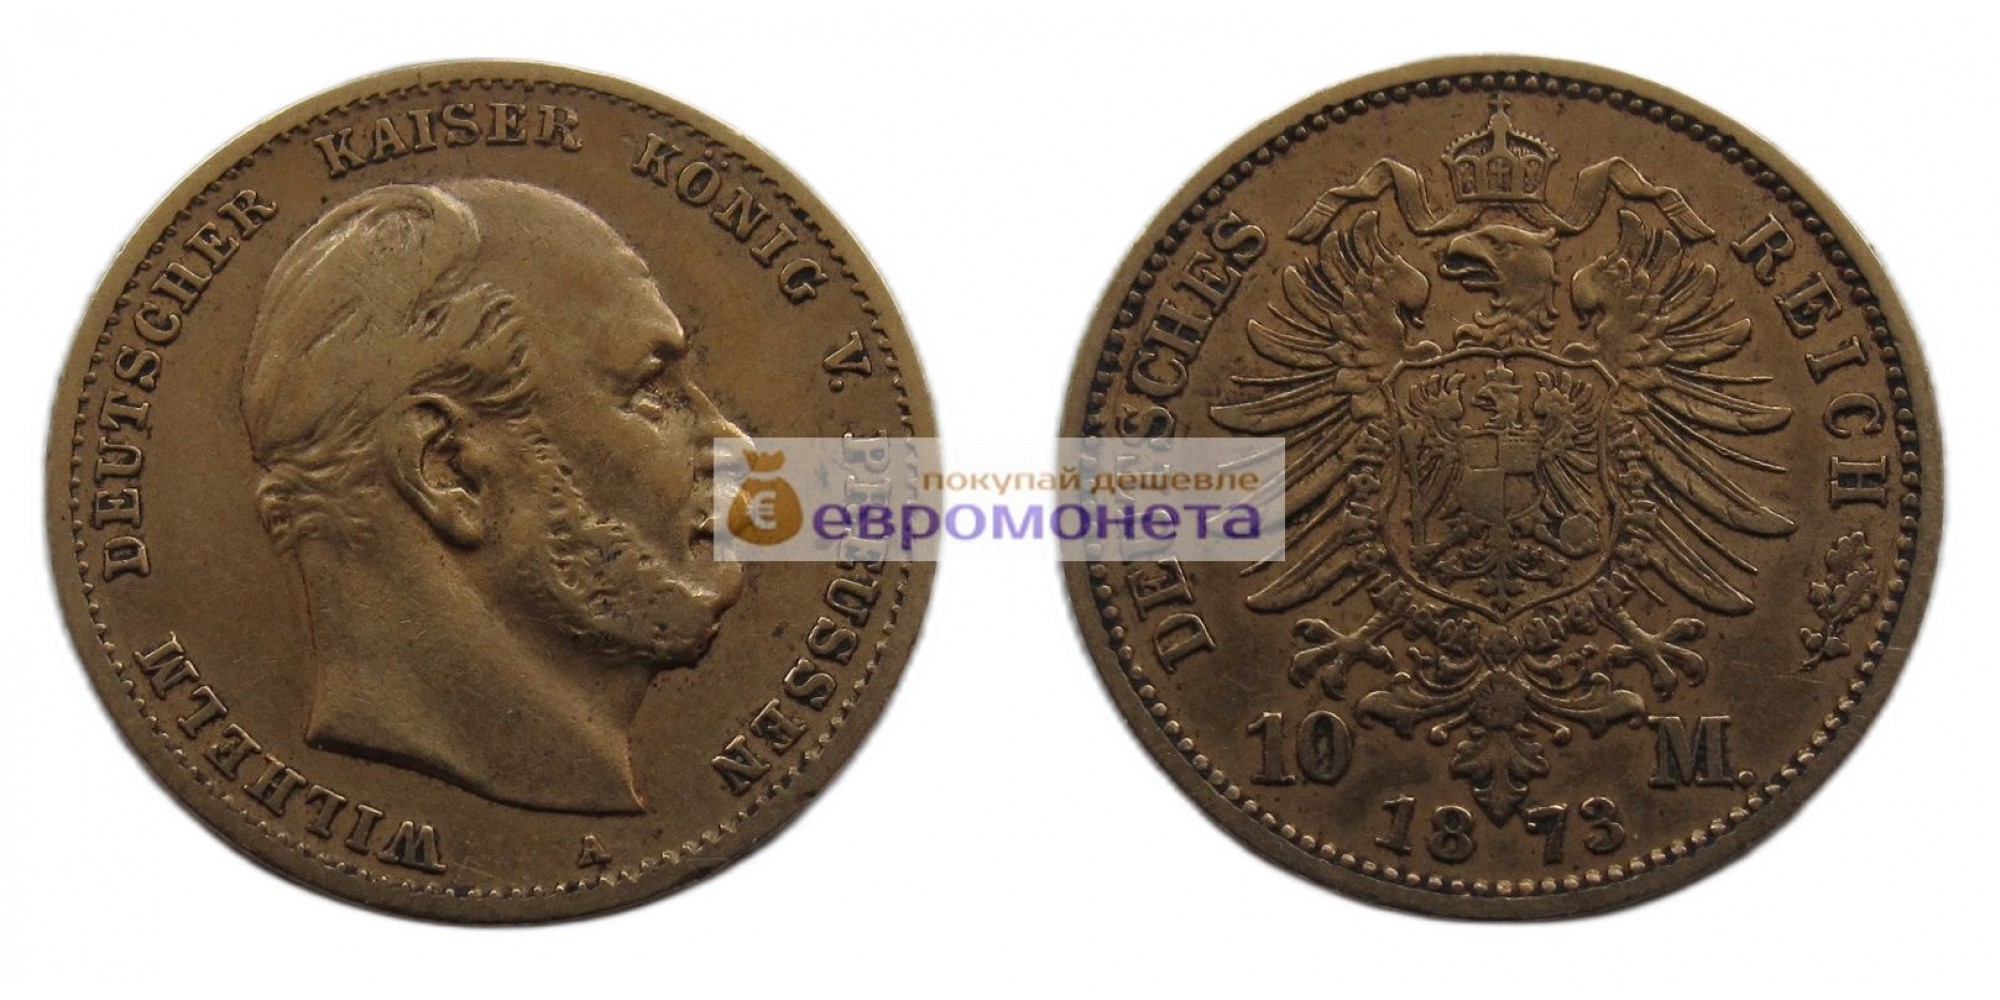 Германская империя Пруссия 10 марок 1873 год "A" Вильгельм I. Золото.